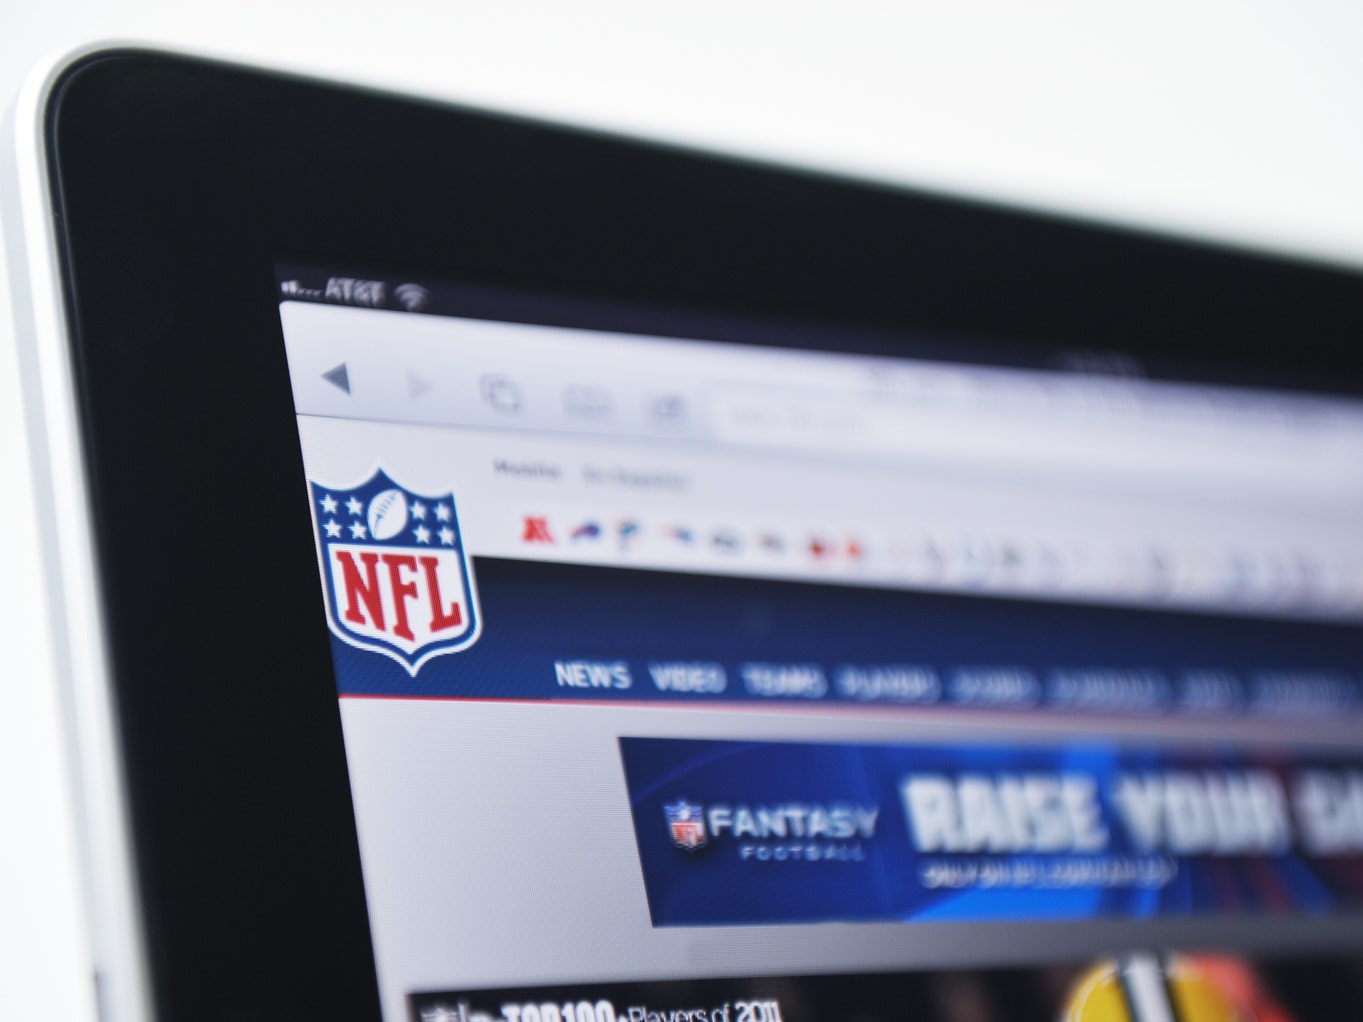 Google: Eyeing   TV Growth Via NFL Sunday Ticket (GOOG)